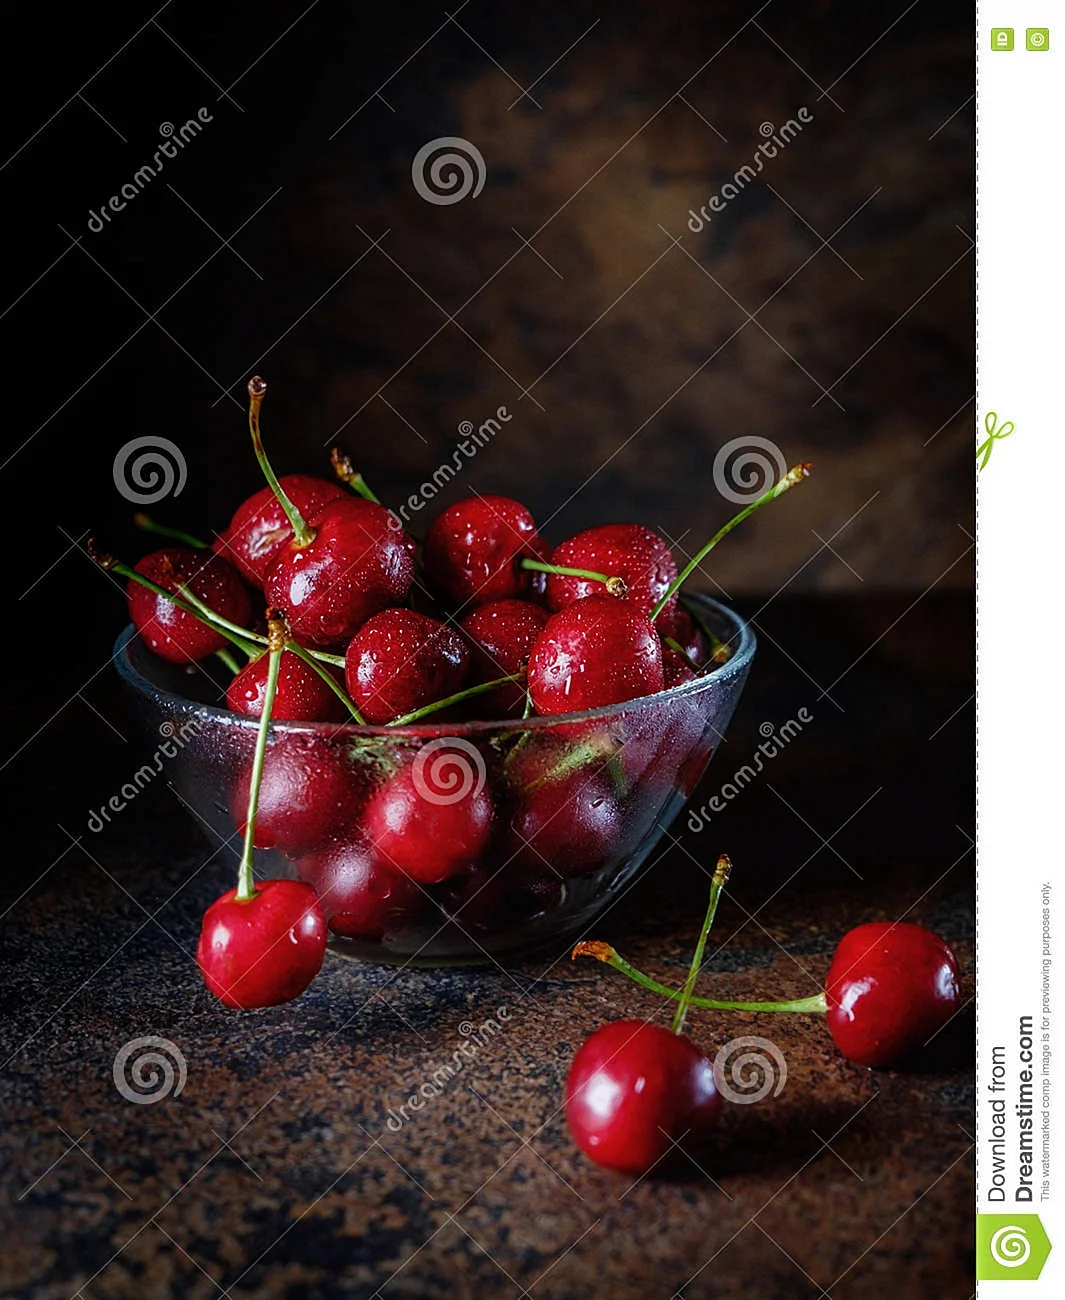 Натюрморт с ягодами